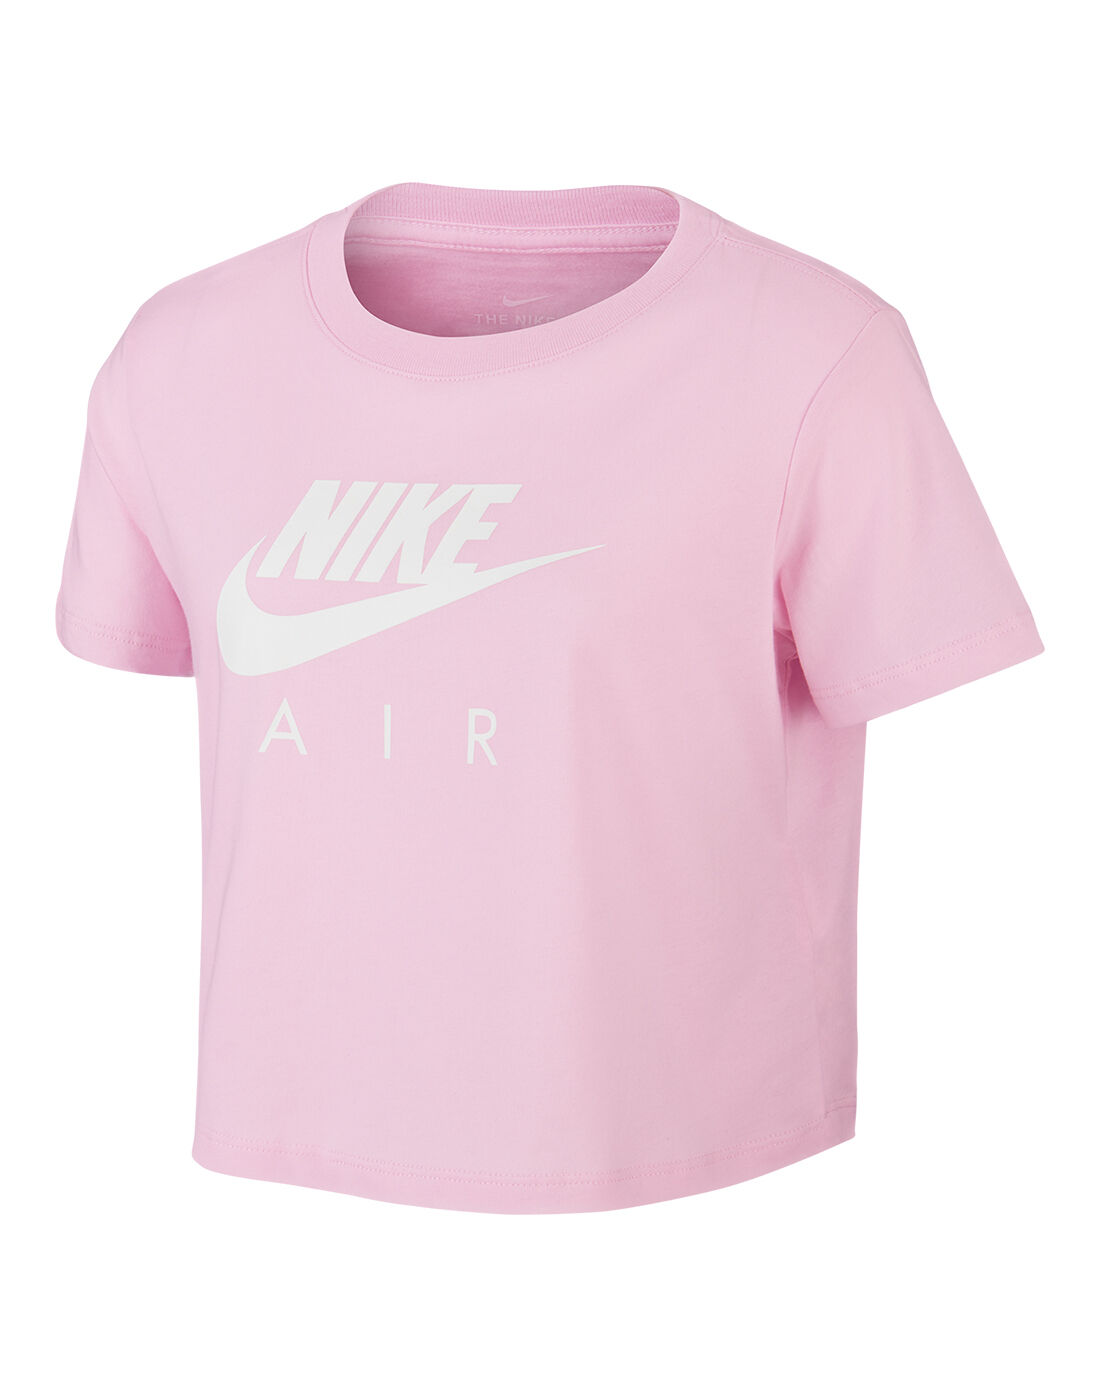 girls pink nike shirt